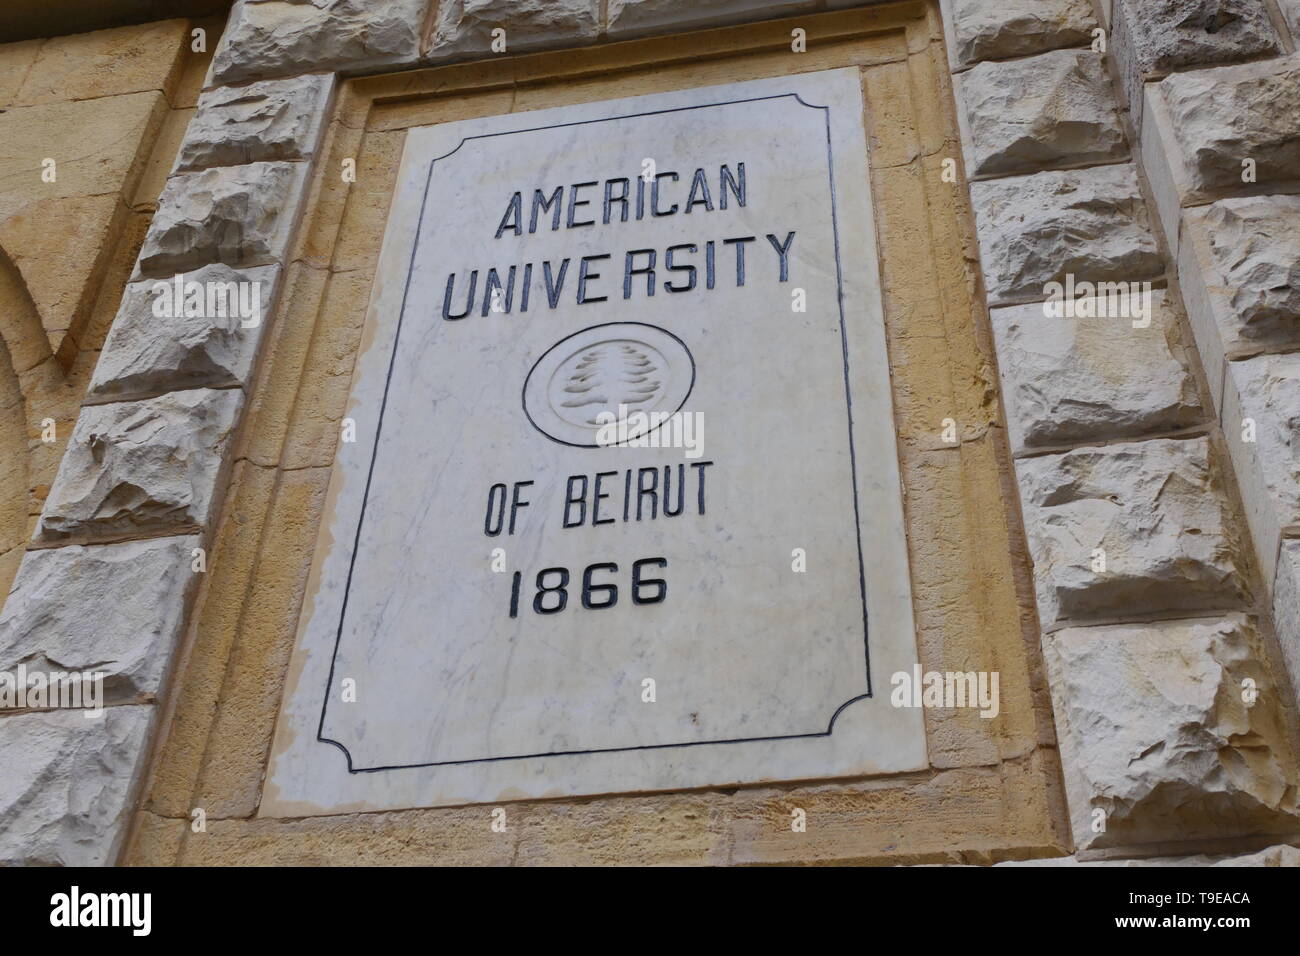 BEIRUT, LIBANON - Dezember 23, 2018: Der Stein Logo der Amerikanischen Universität von Beirut, im Jahr 1866 gegründet. Stockfoto